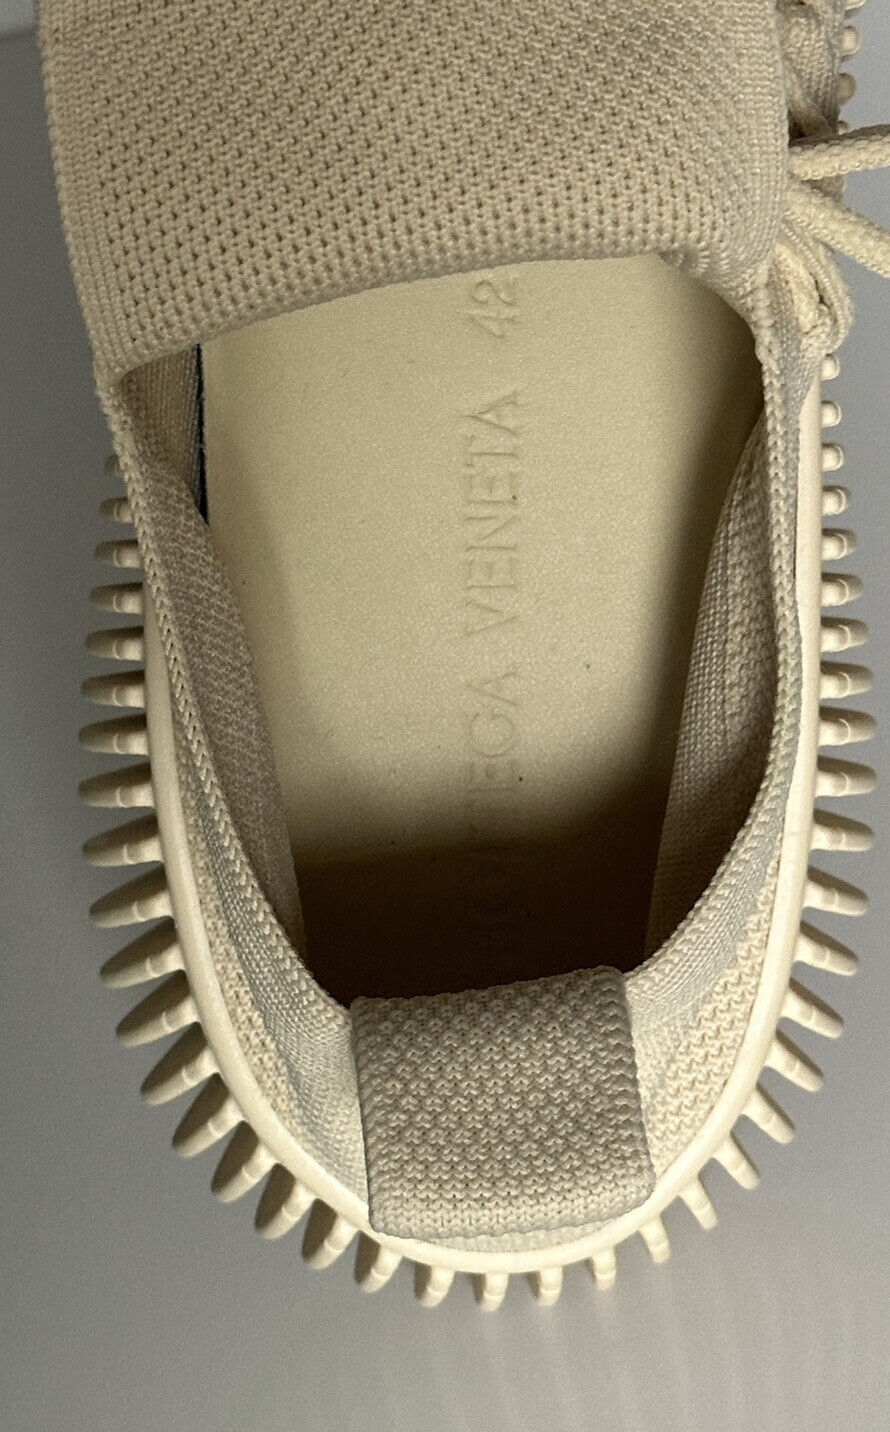 Мужские кроссовки Bottega Veneta Tech Knit Cane Sugar за 920 долларов США 9 США (42 ЕС) 690112